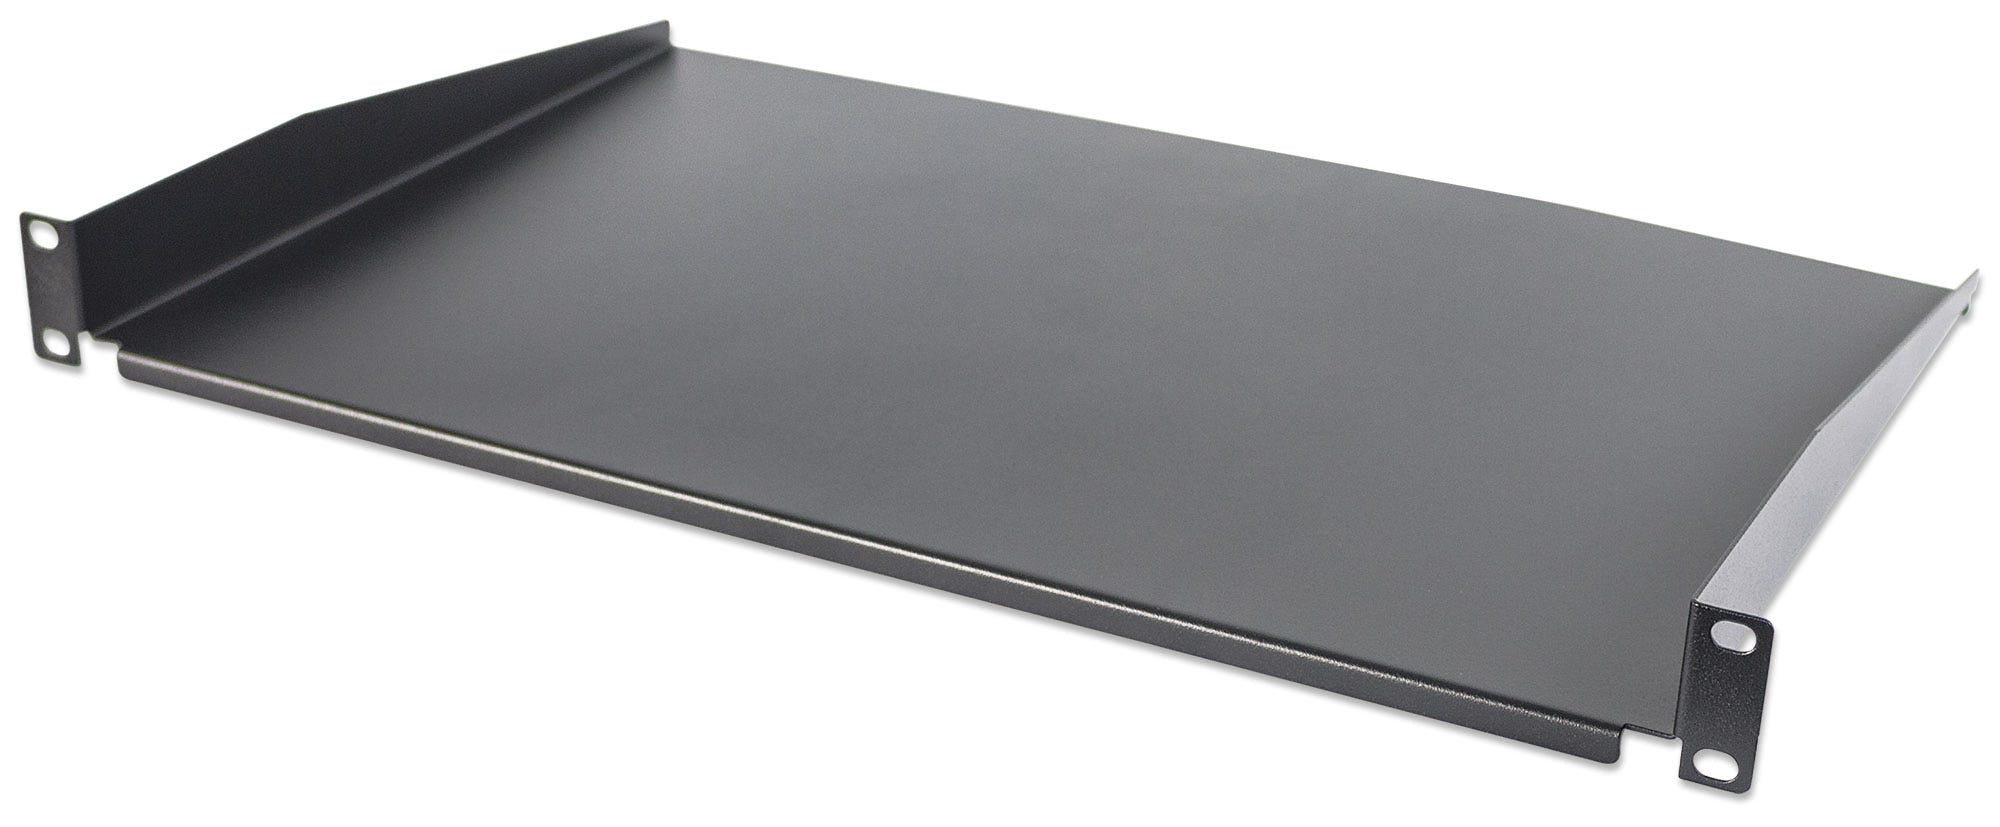 Intellinet 19" Cantilever Shelf, 1U, Shelf Depth 300mm, Non-Vented, Max 25kg, Black, Three Year Warranty